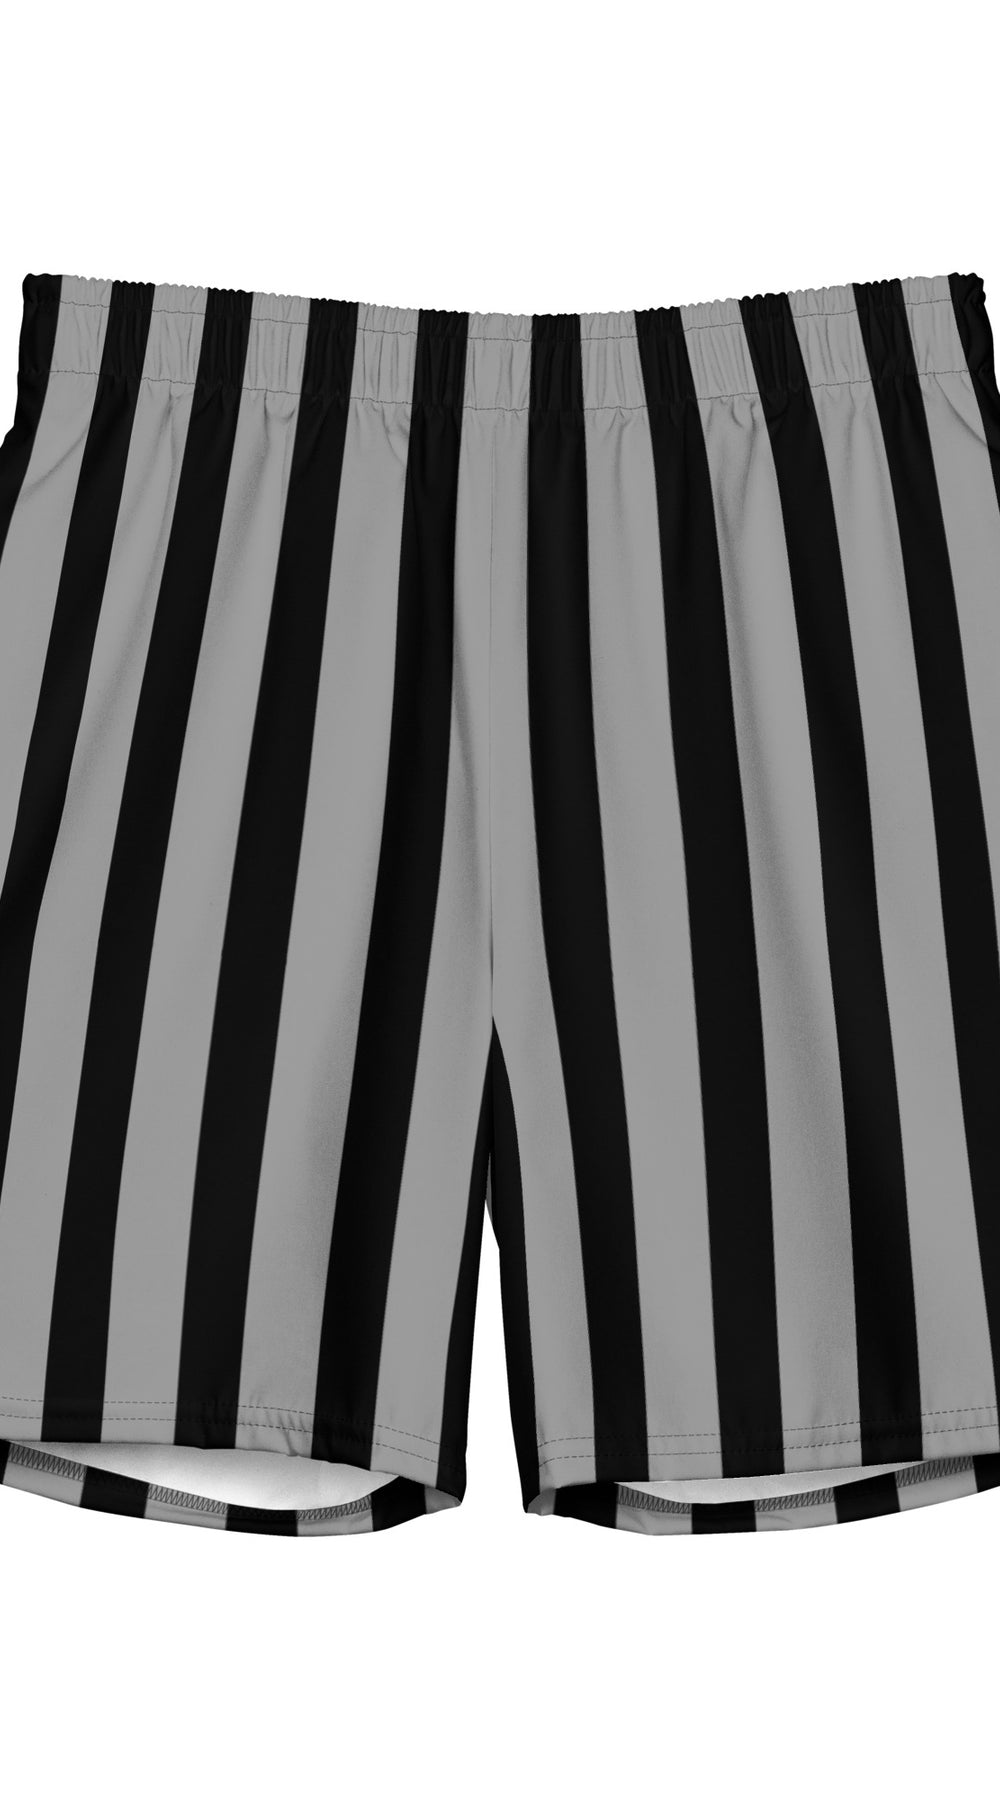 Men's ECO Swim Trunks - Stripes